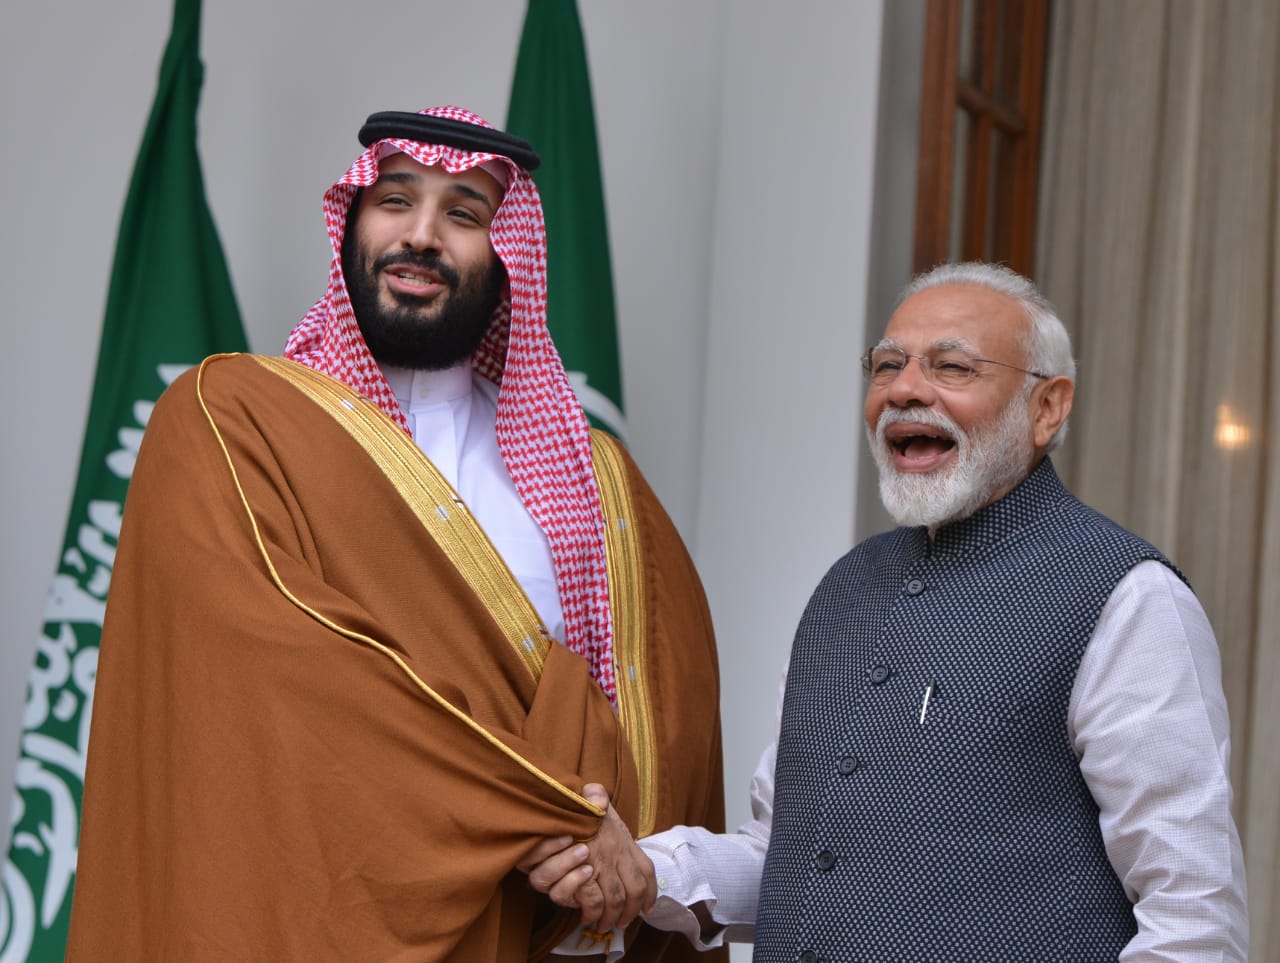 Prime Minister Narendra Modi with Saudi Arabia’s crown prince, Mohammed bin Salman, in New Delhi on February 20, 2019.